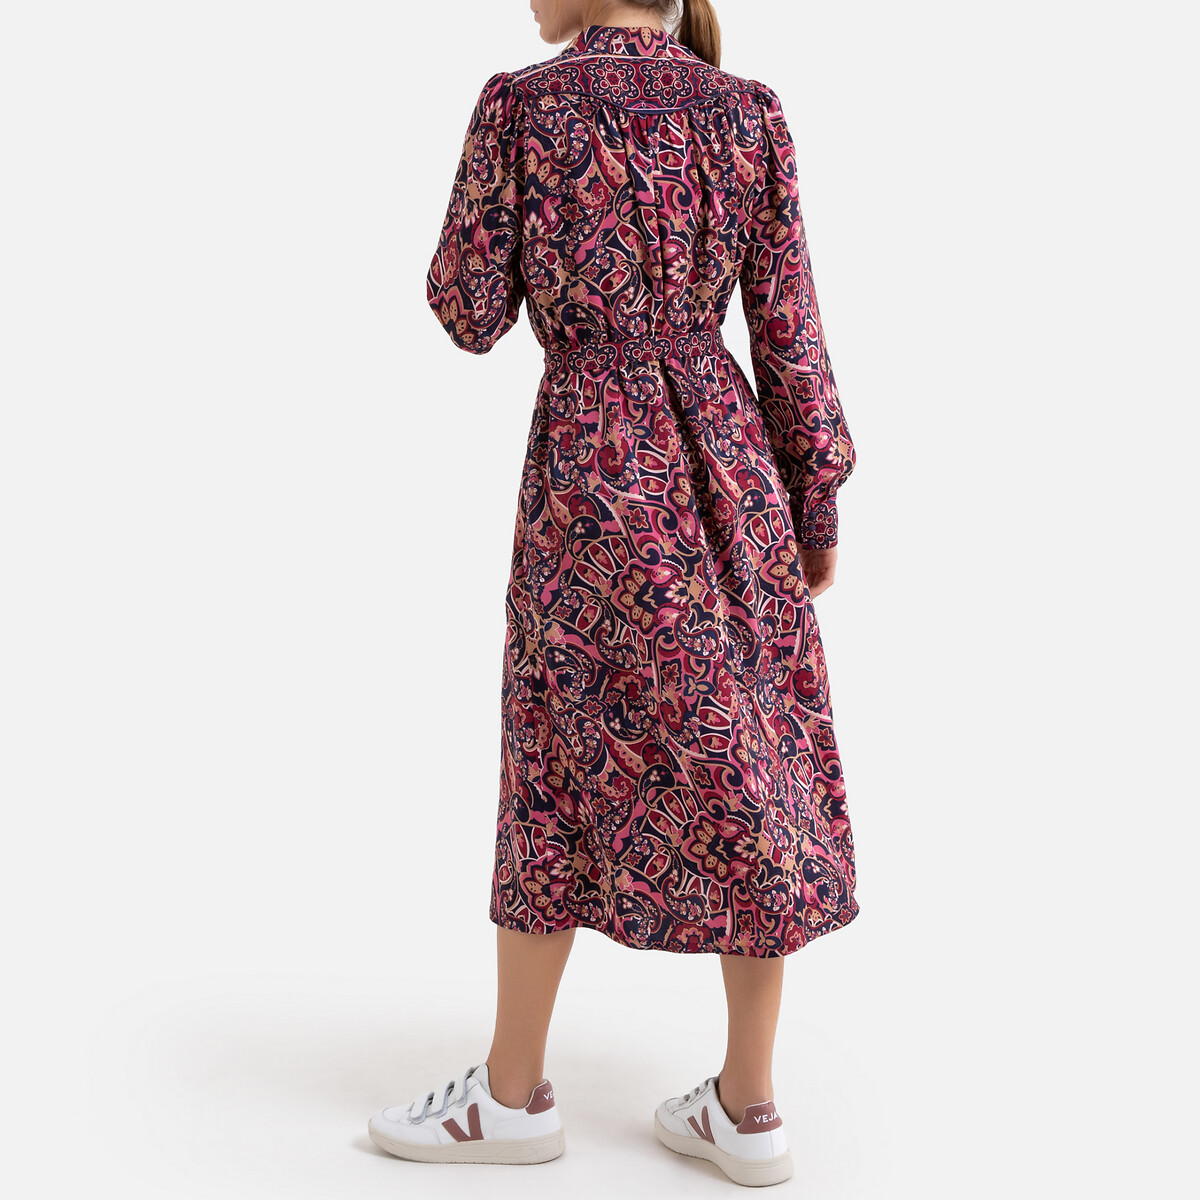 Платье La Redoute Длинное прямое с кашемировым рисунком 0(XS) розовый, размер 0(XS) Длинное прямое с кашемировым рисунком 0(XS) розовый - фото 3